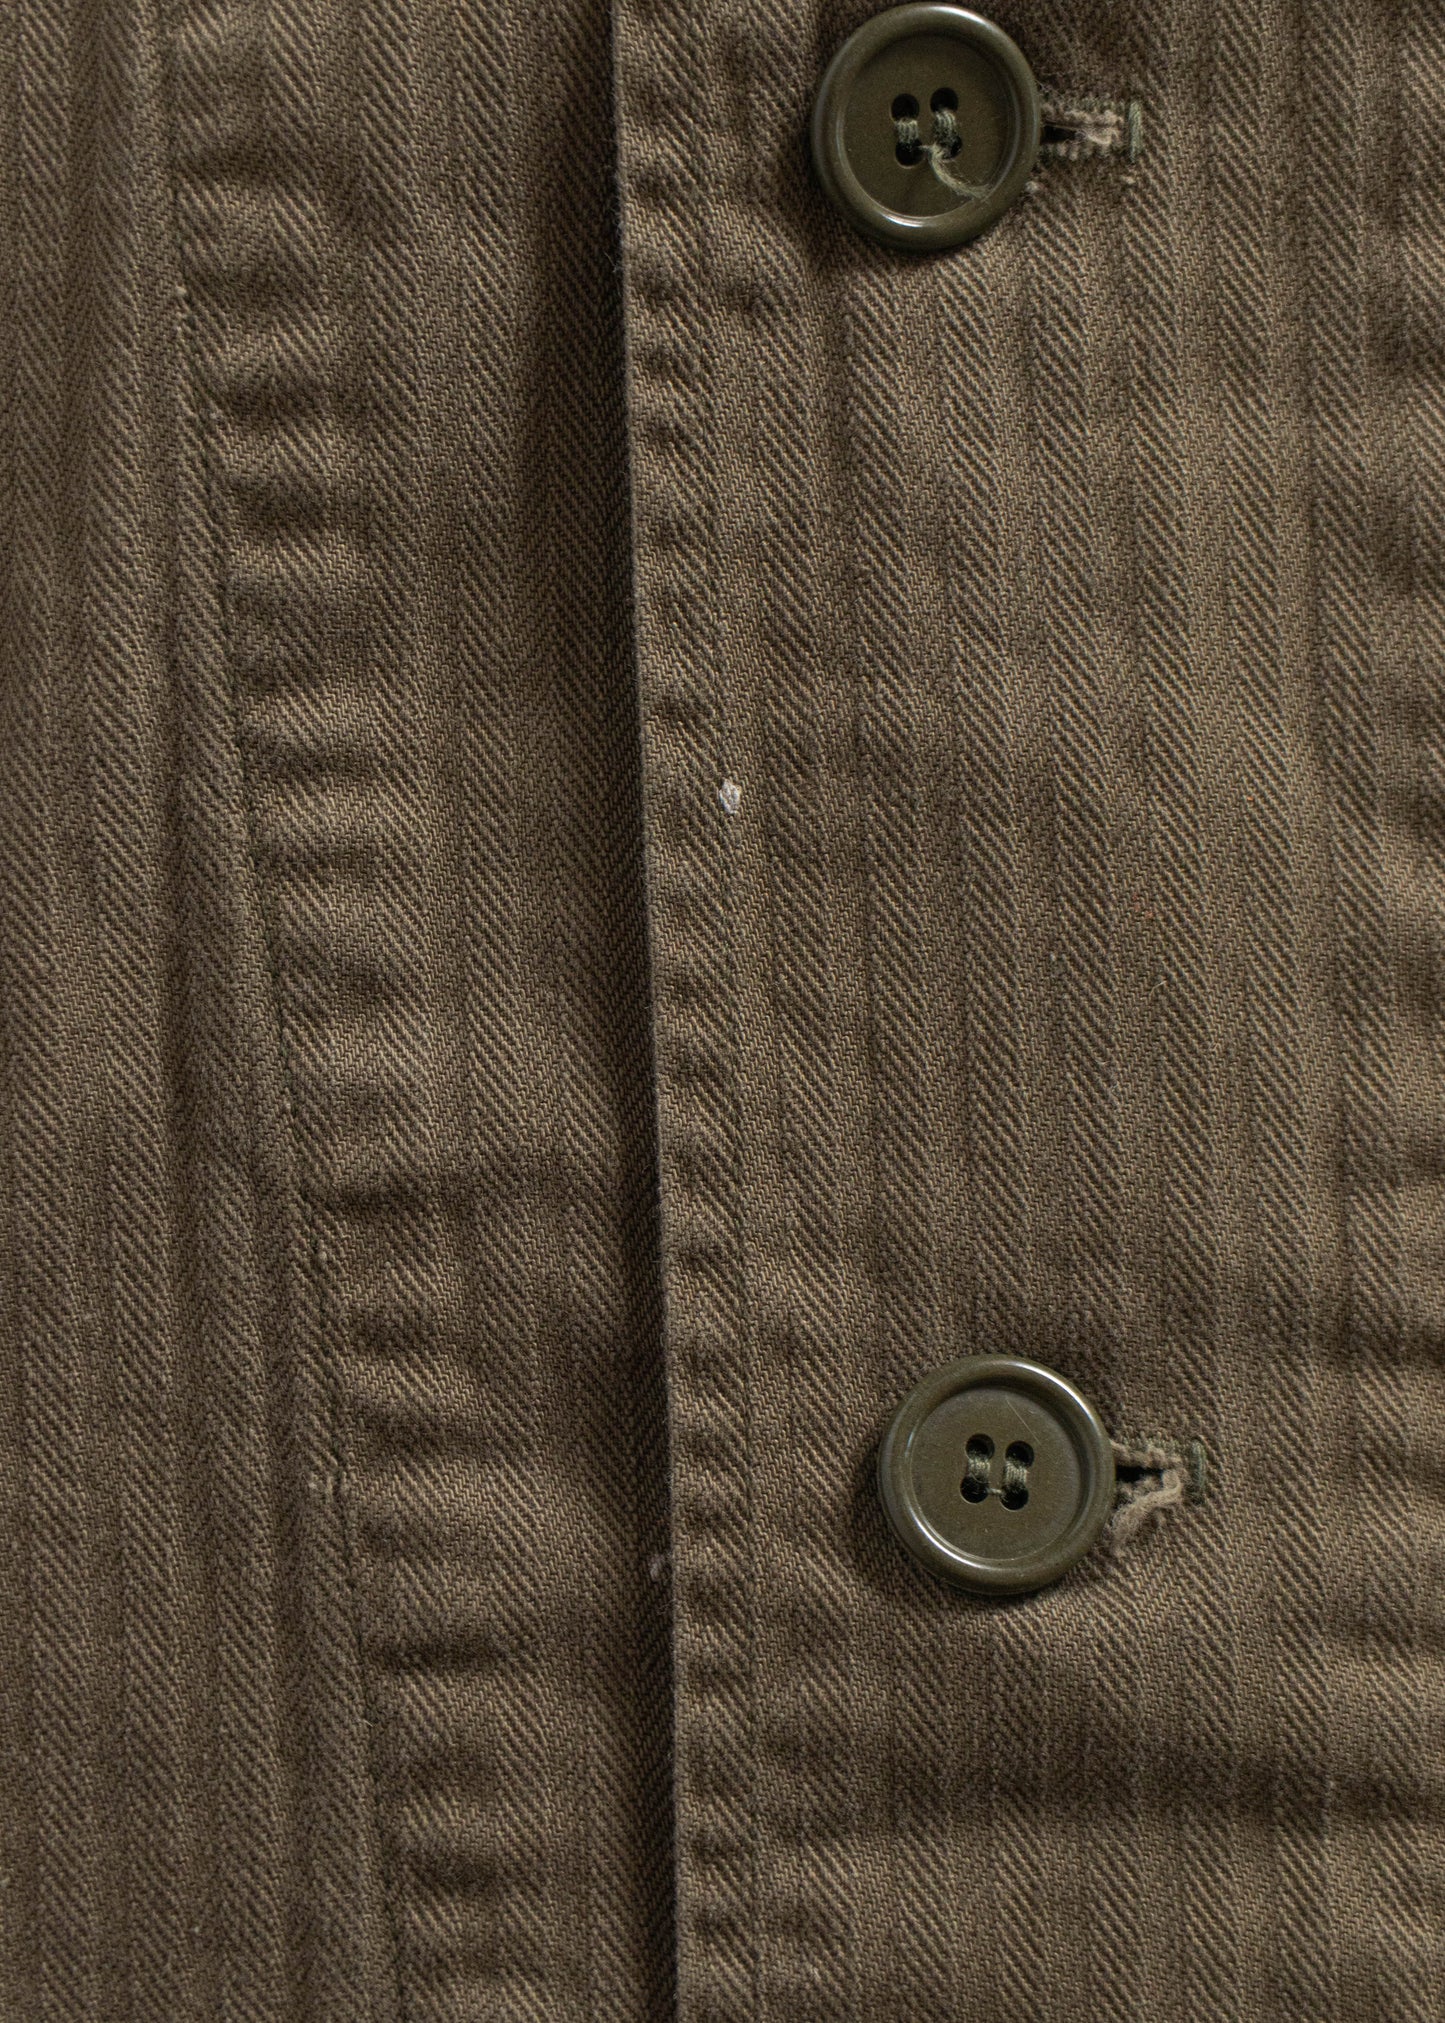 Vintage 1970s Herringbone Twill Military Field Jacket Size M/L